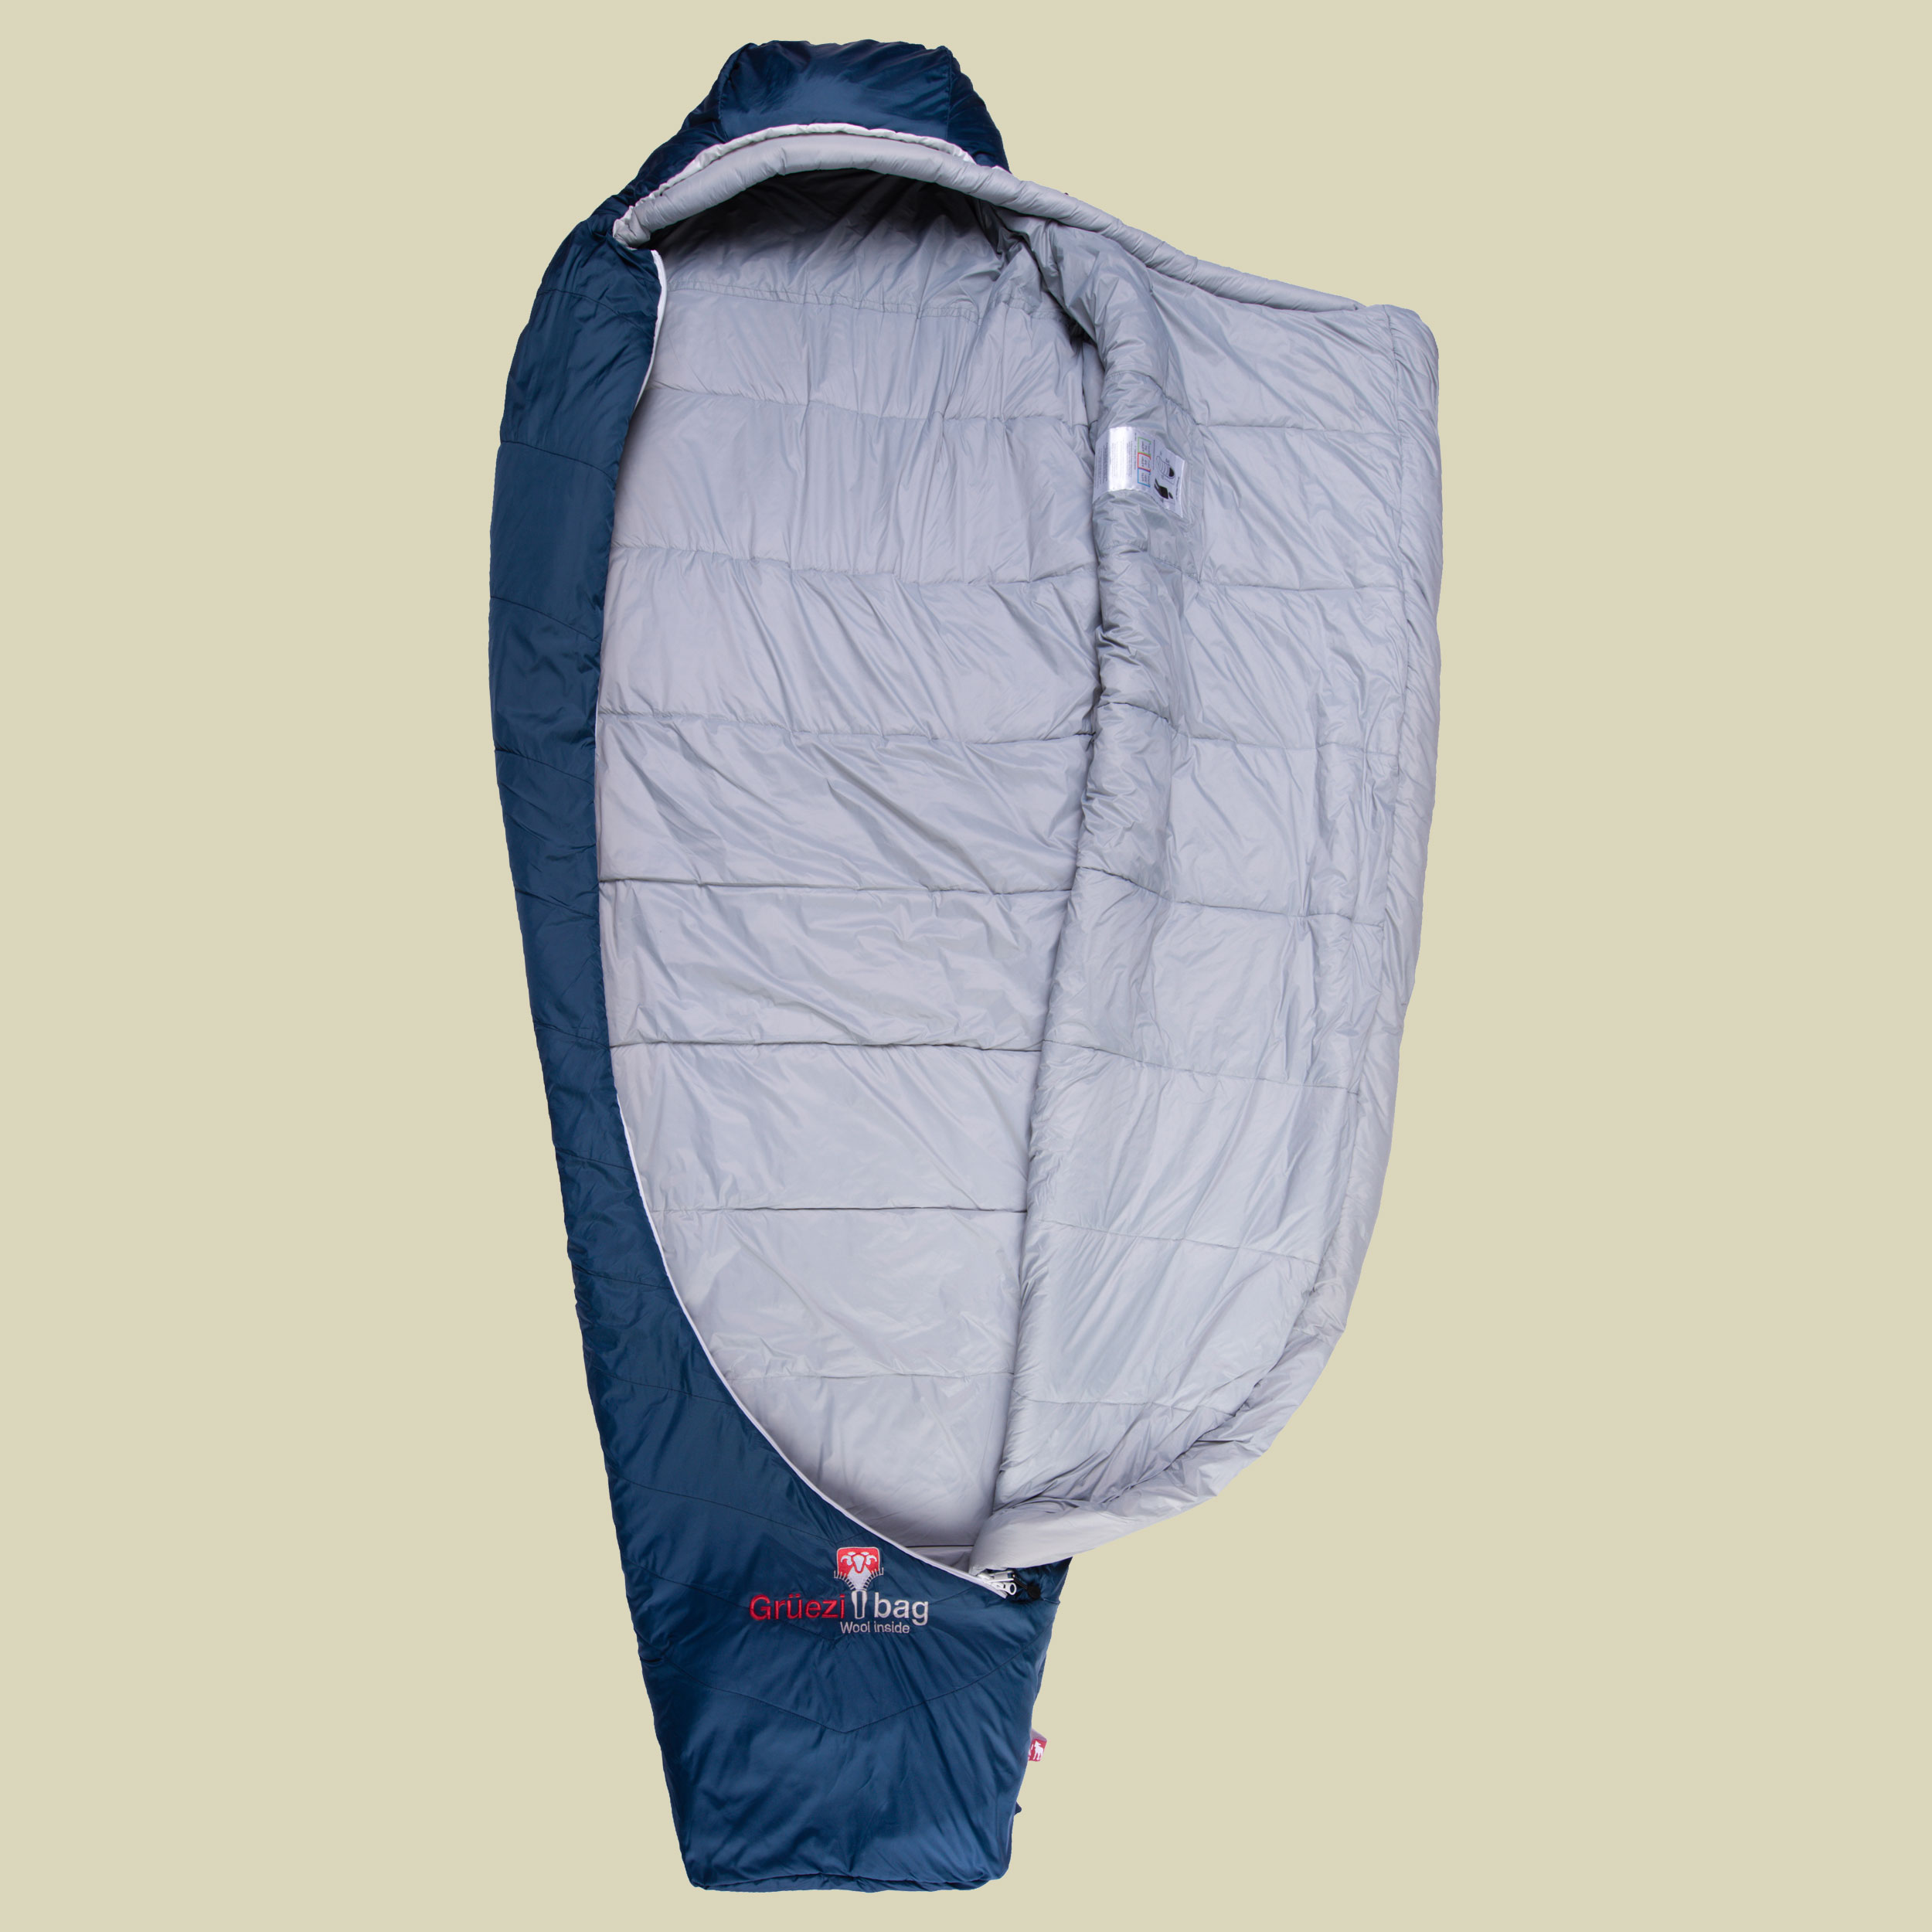 Biopod Wolle Zero bis Körpergröße Schlafsack  185 cm Farbe night blue